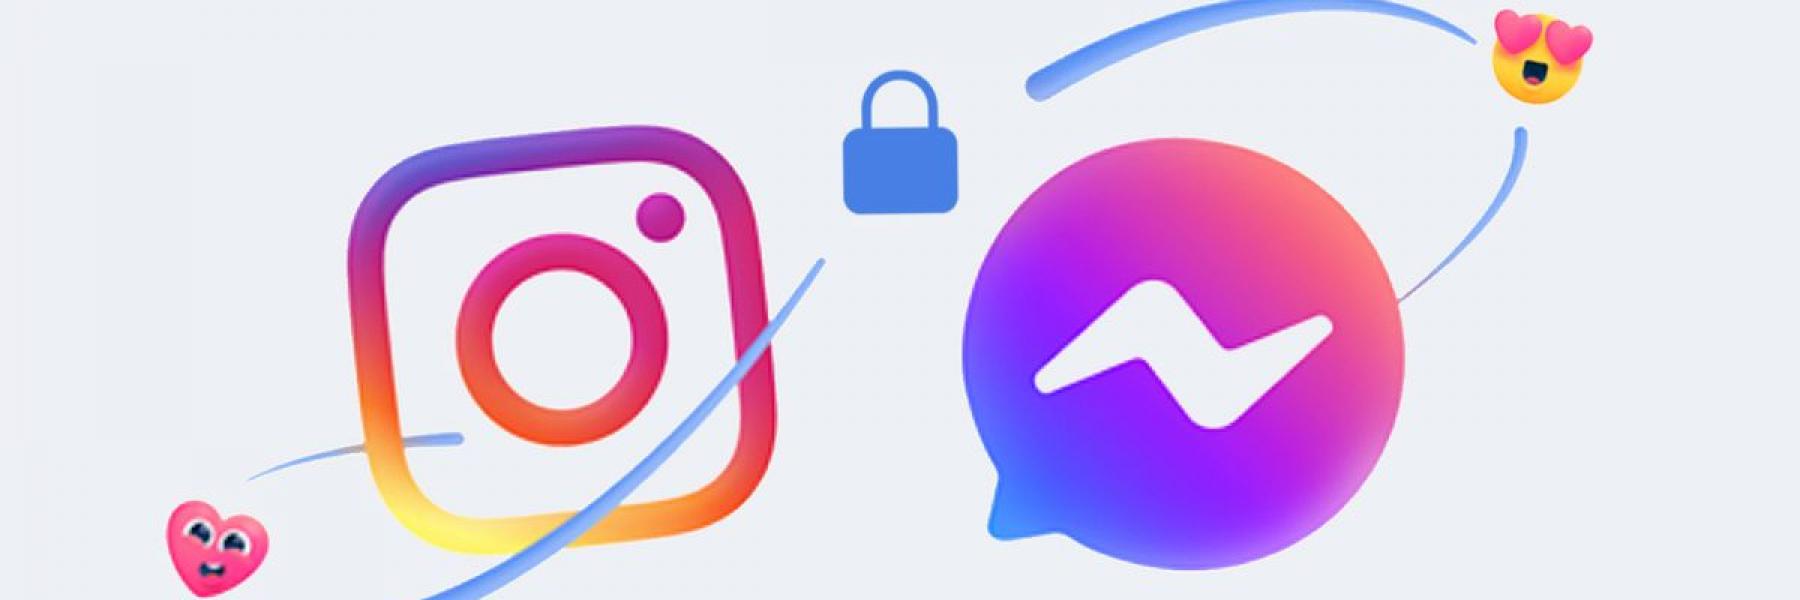 فيسبوك تغيّر ألوان الشعار في تطبيق ماسنجر وتضيف خصائص جديدة للدردشة (تفاصيل)